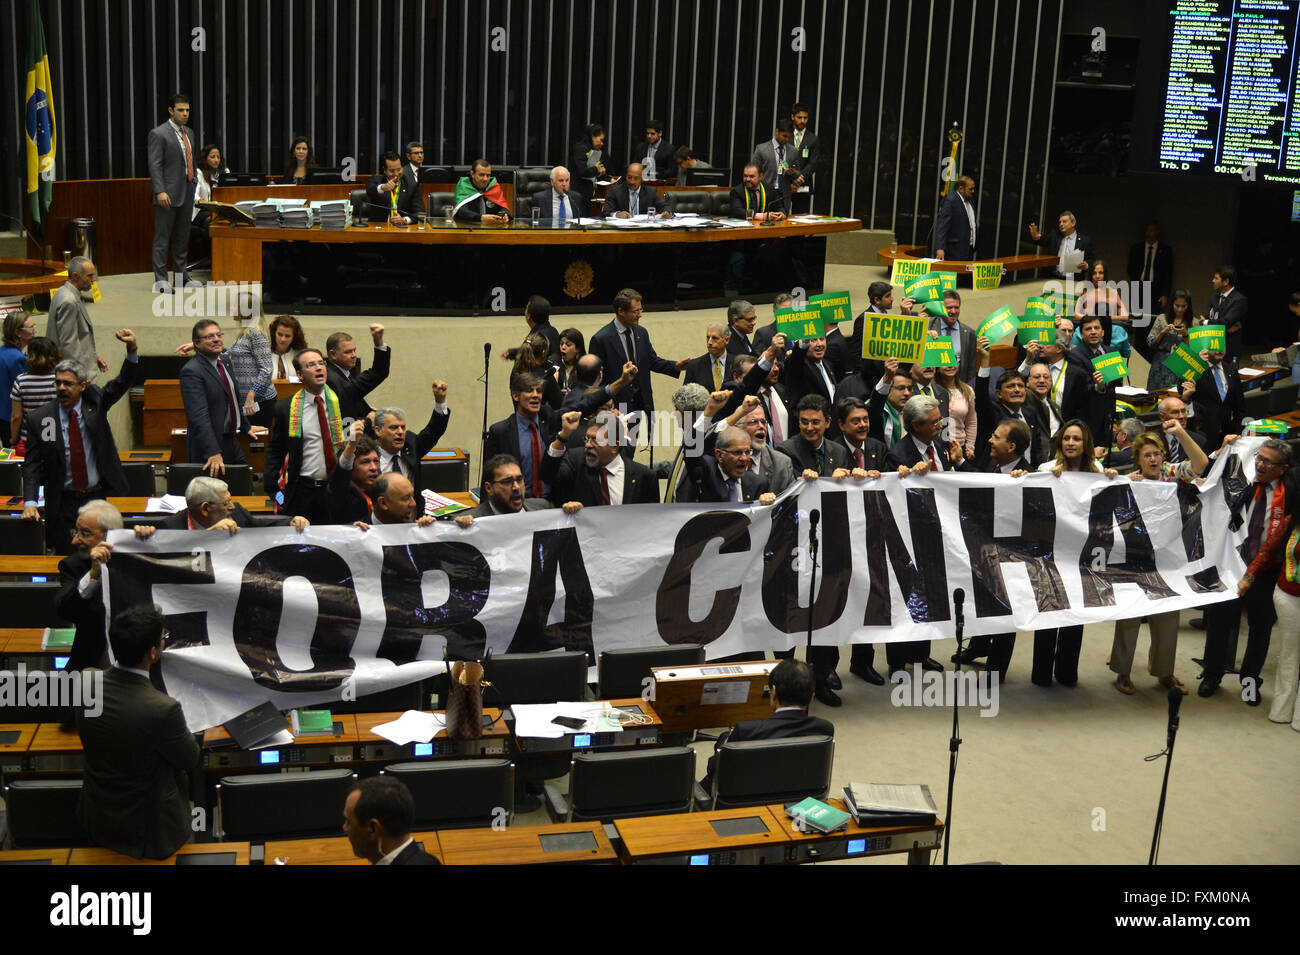 Les députés de l'opposition de la Chambre des députés se montrent favorables à la destitution du Président Dilma Rousseff en tant que la chambre basse débats le motion le 16 avril 2016 à Brasilia, Brésil. Les députés de l'opposition veulent remplacer Rousseff avec le président Eduardo Cunha. Banque D'Images